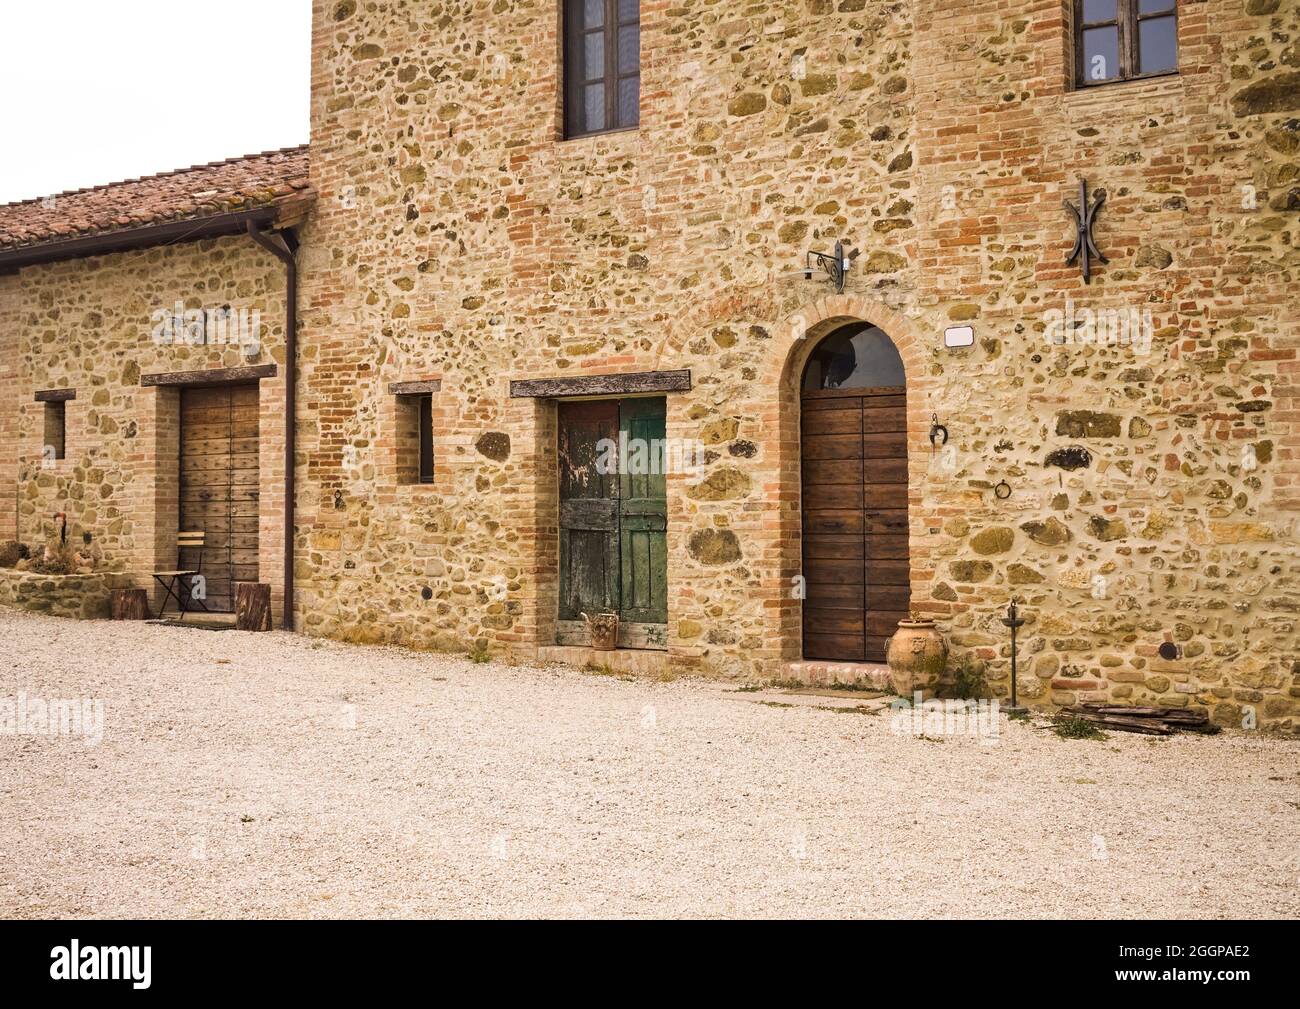 La facciata di un casale rurale in pietra con porte e finestre in legno  nella campagna italiana (Toscana, Italia, Europa Foto stock - Alamy